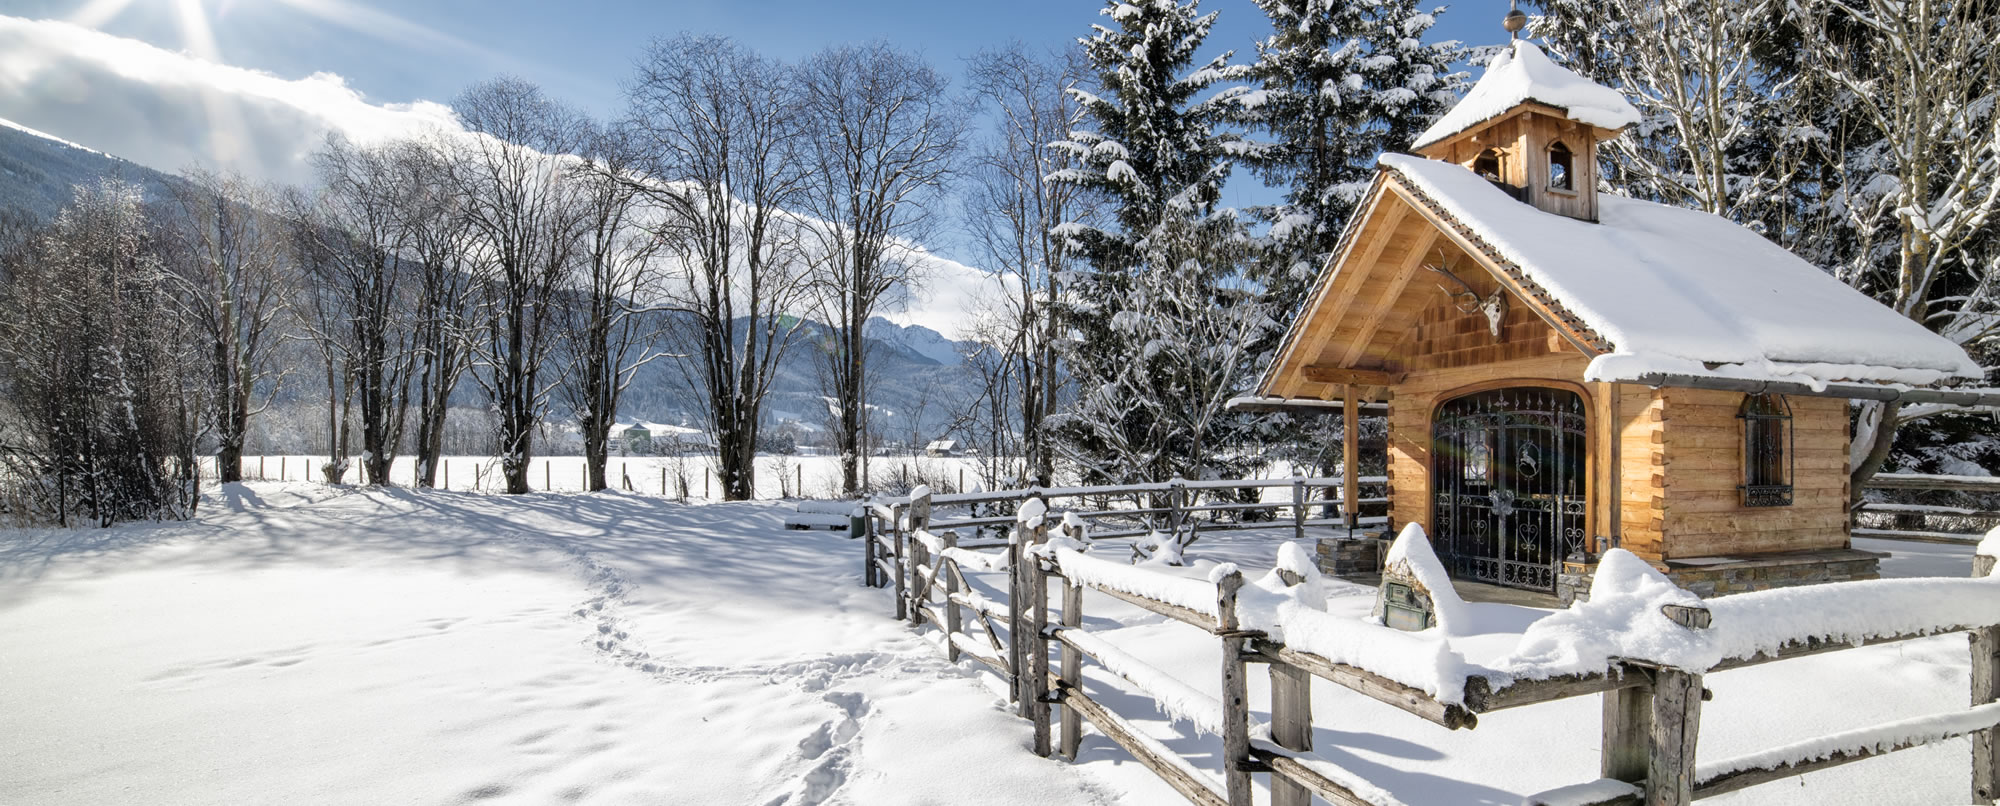 Urlaubsvorteile mit der LungauCard Winter © Ferienregion Salzburger Lungau